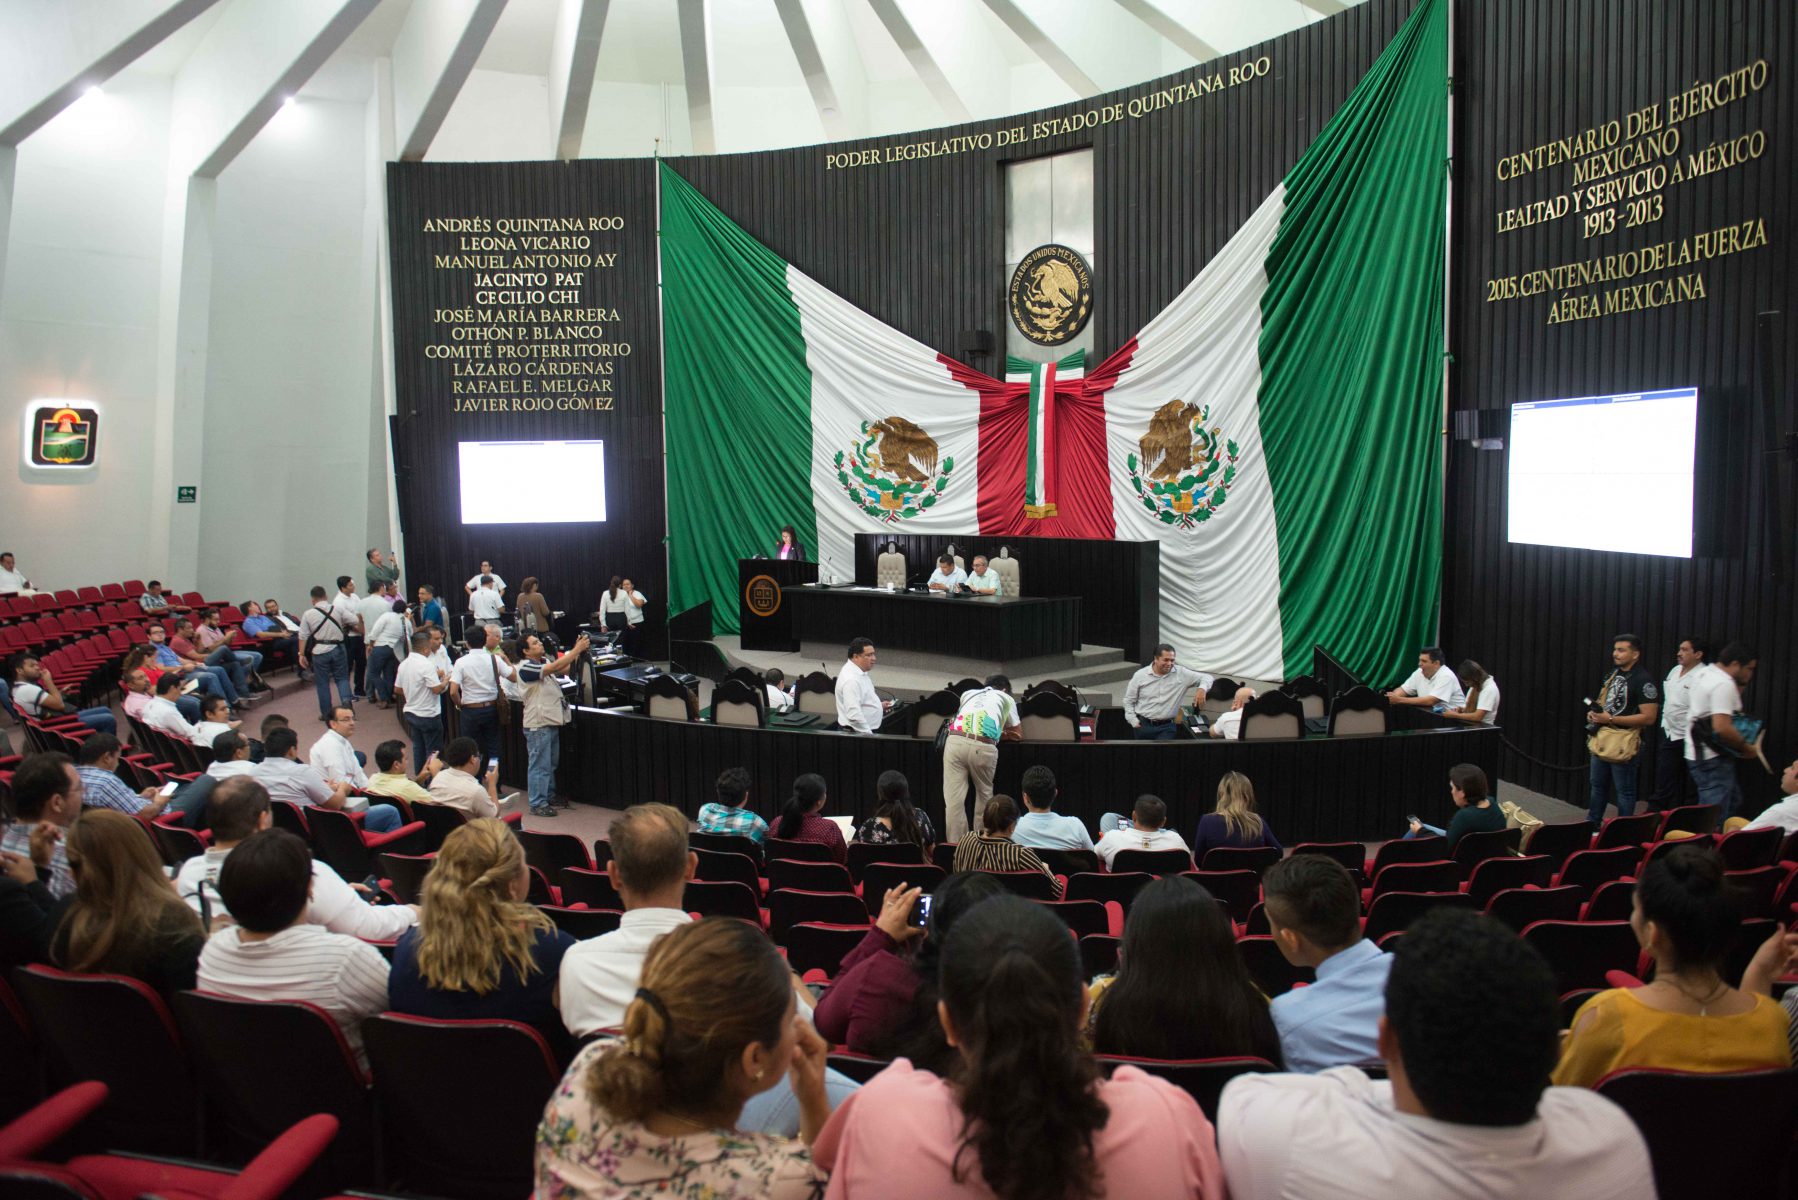 La XV Legislatura aprobó reformas a la Ley Orgánica de la Administración Pública del Estado de Quintana Roo.